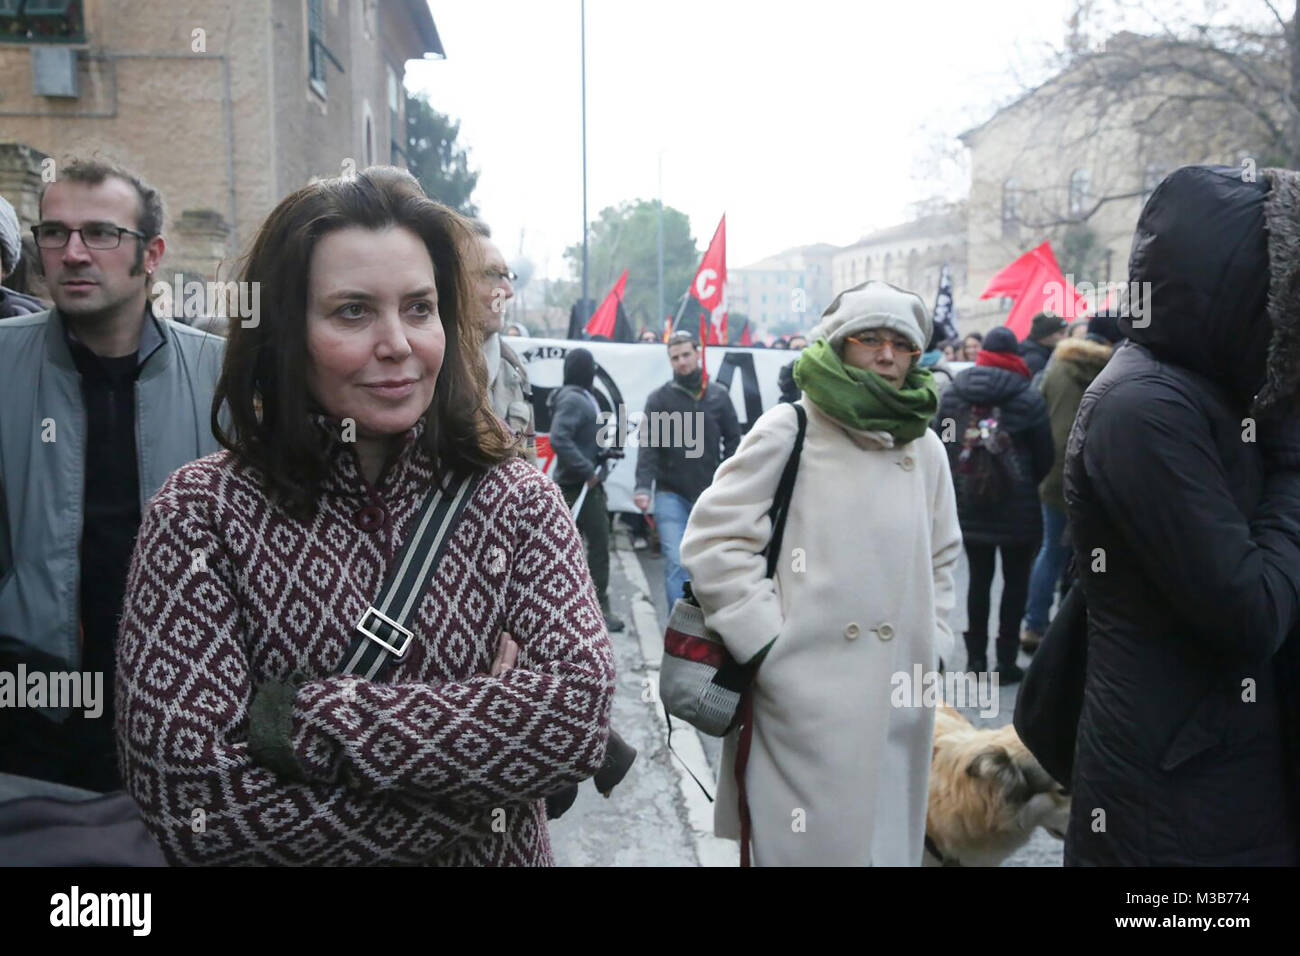 Macerata, Sabrina Guzzanti at the anti-racist demonstration in Macerata. 10/02/2018, Macerata, Italy Stock Photo